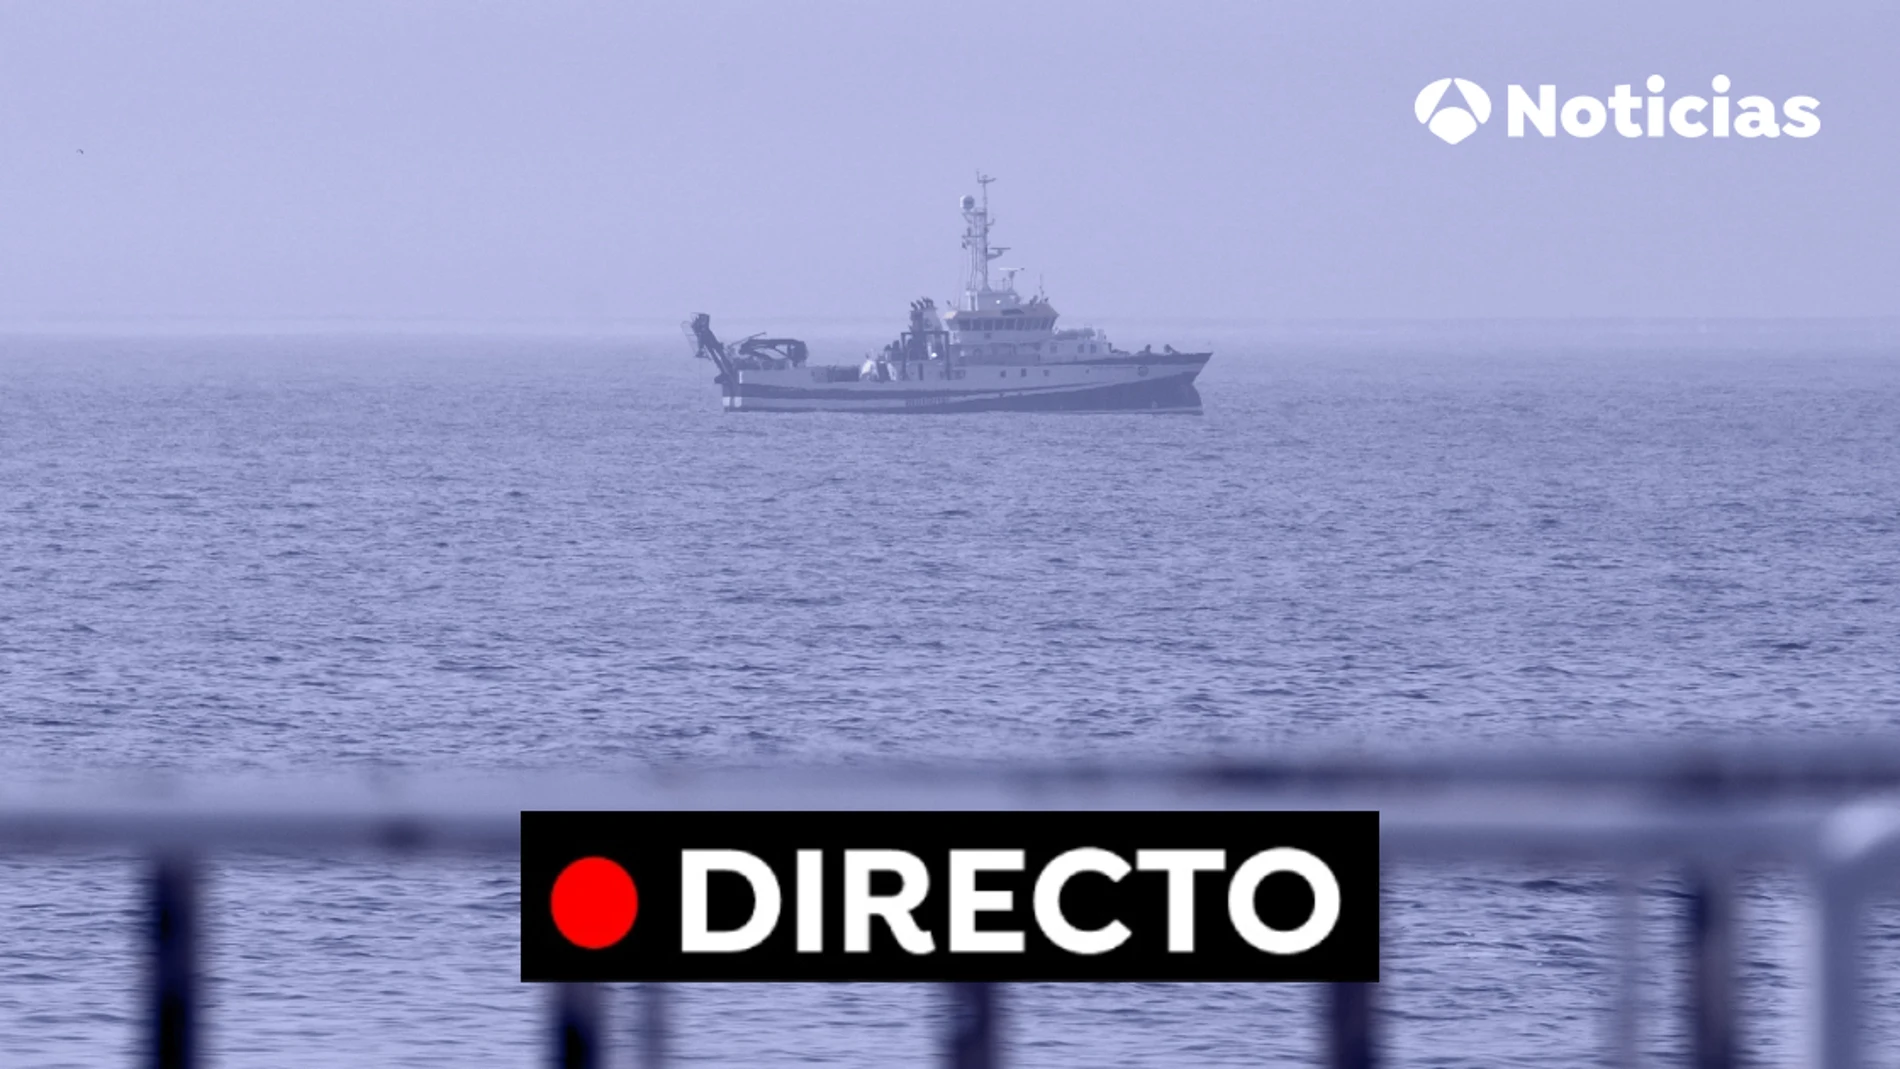 Niñas desaparecidas Tenerife: Última hora de la búsqueda de Tomás Gimeno, Anna y noticias en directo